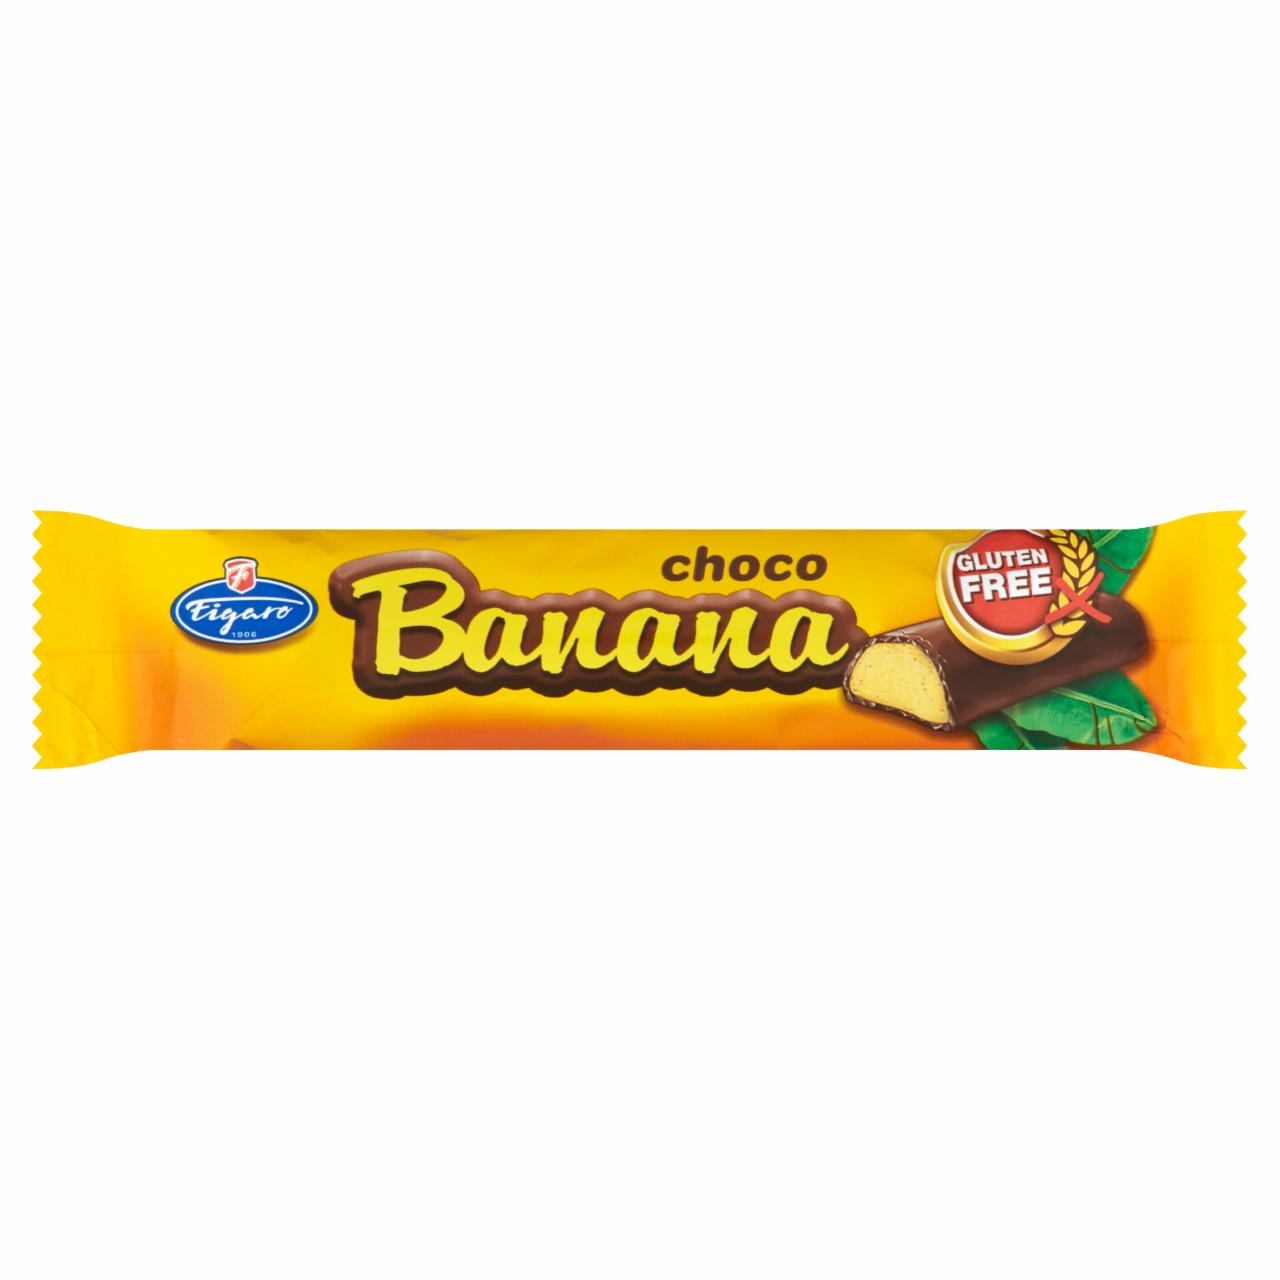 Képek - Figaro étcsokoládéval bevont banános habos zselé szelet 20 g